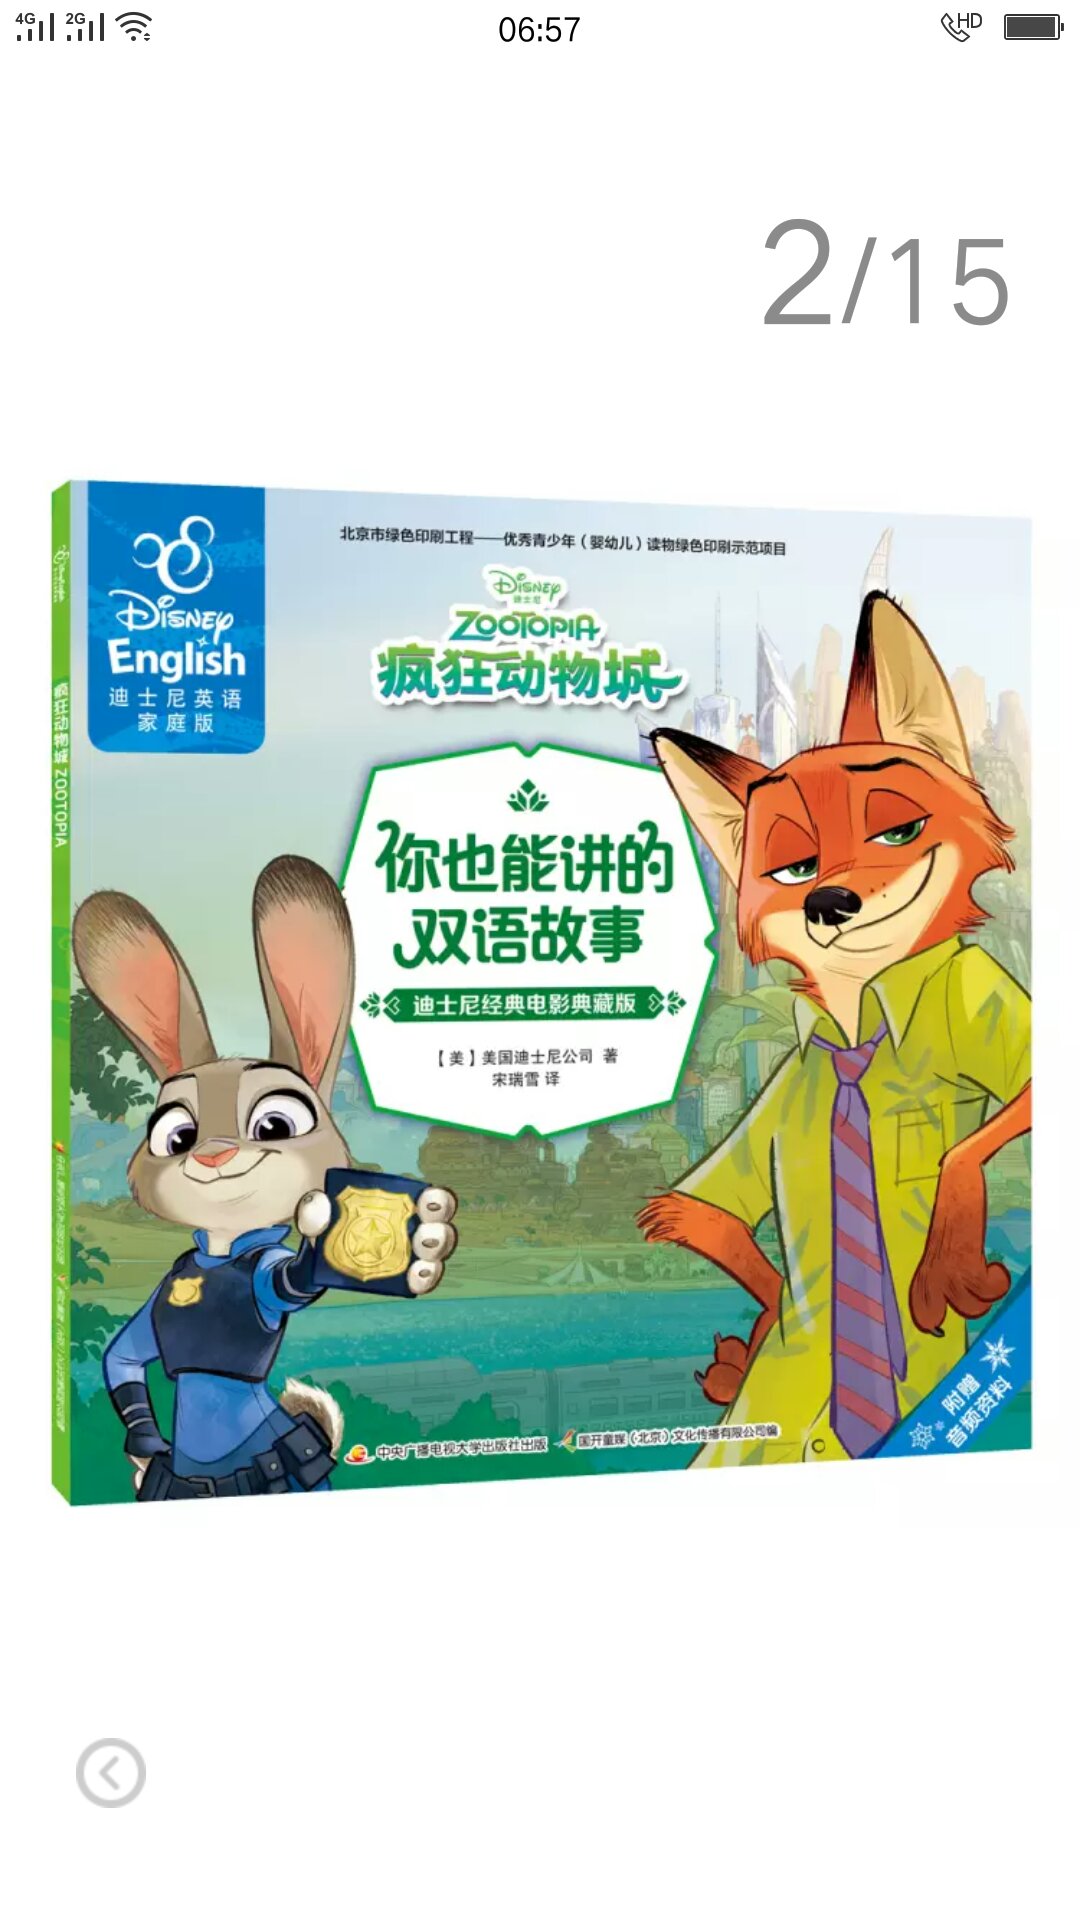 不错，对孩子学习英语有很大的帮助，以后可以多买点这类书！